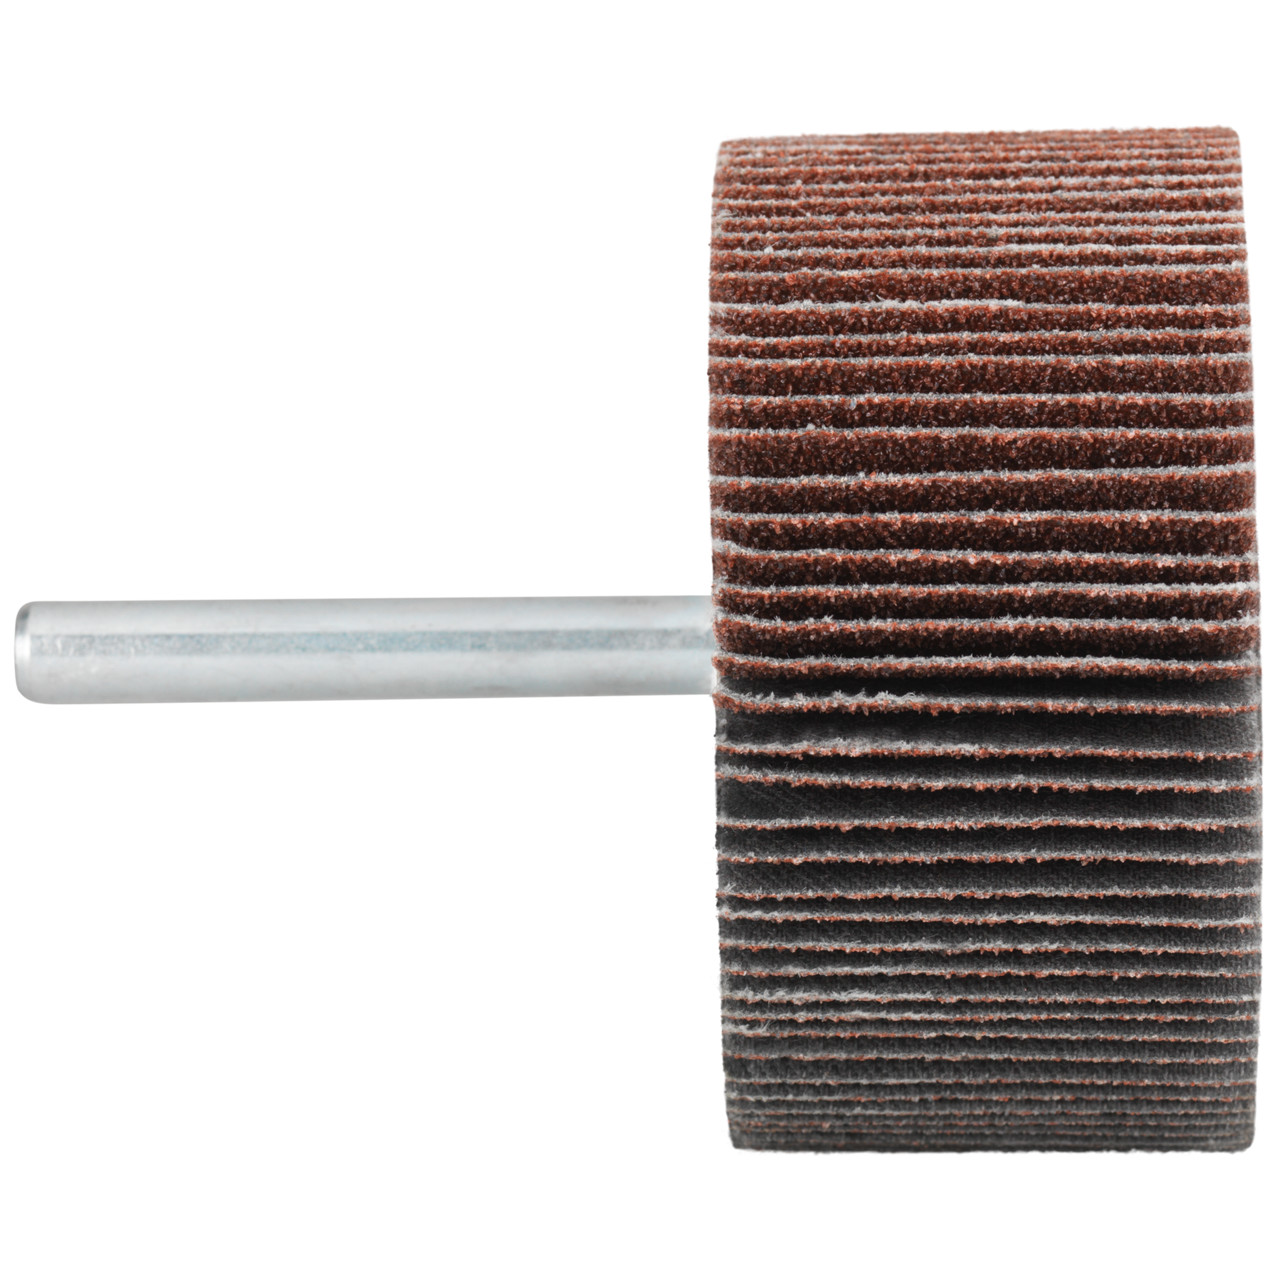 Tyrolit A-P01 C X Pennen DxD 20x10 Voor staal, roestvast staal en non-ferrometalen, P60, vorm: 52LA, Art. 49856